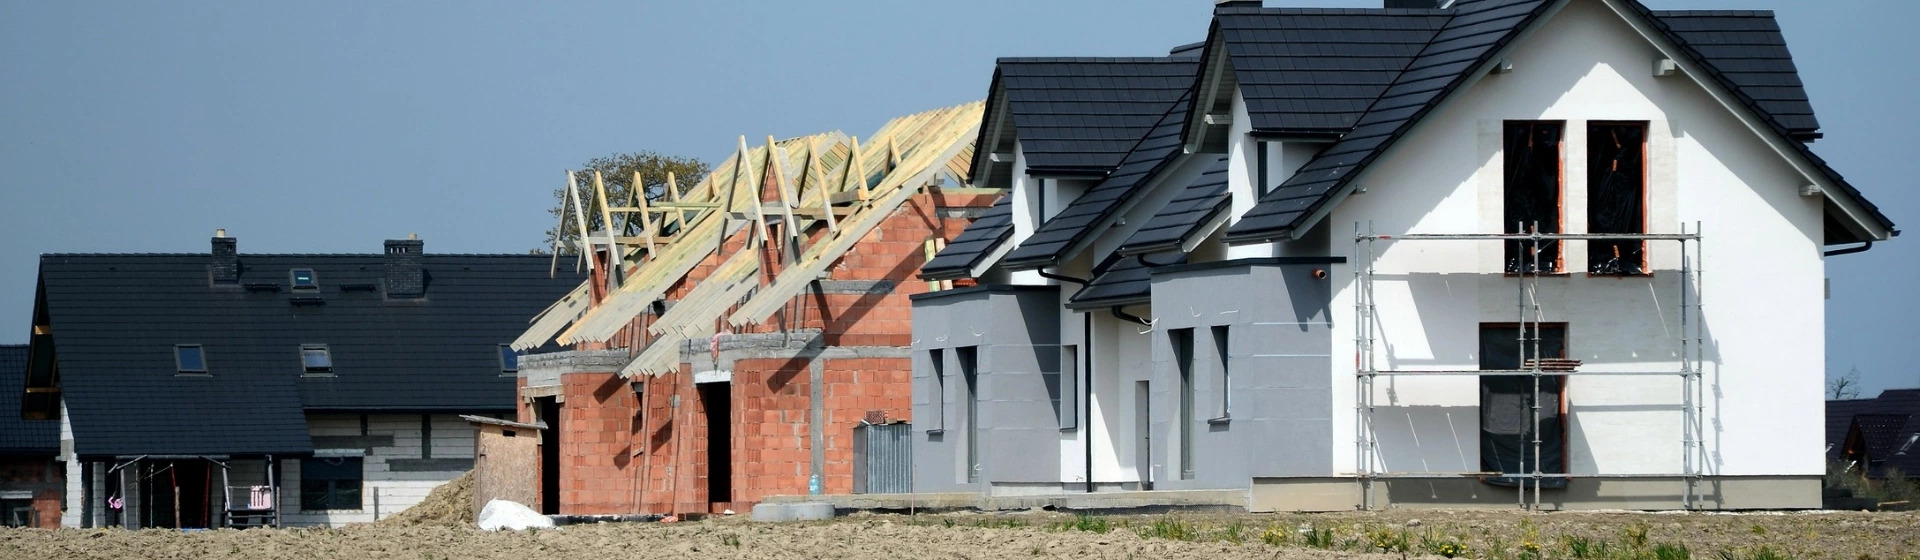 osiedle domów w trakcie budowy